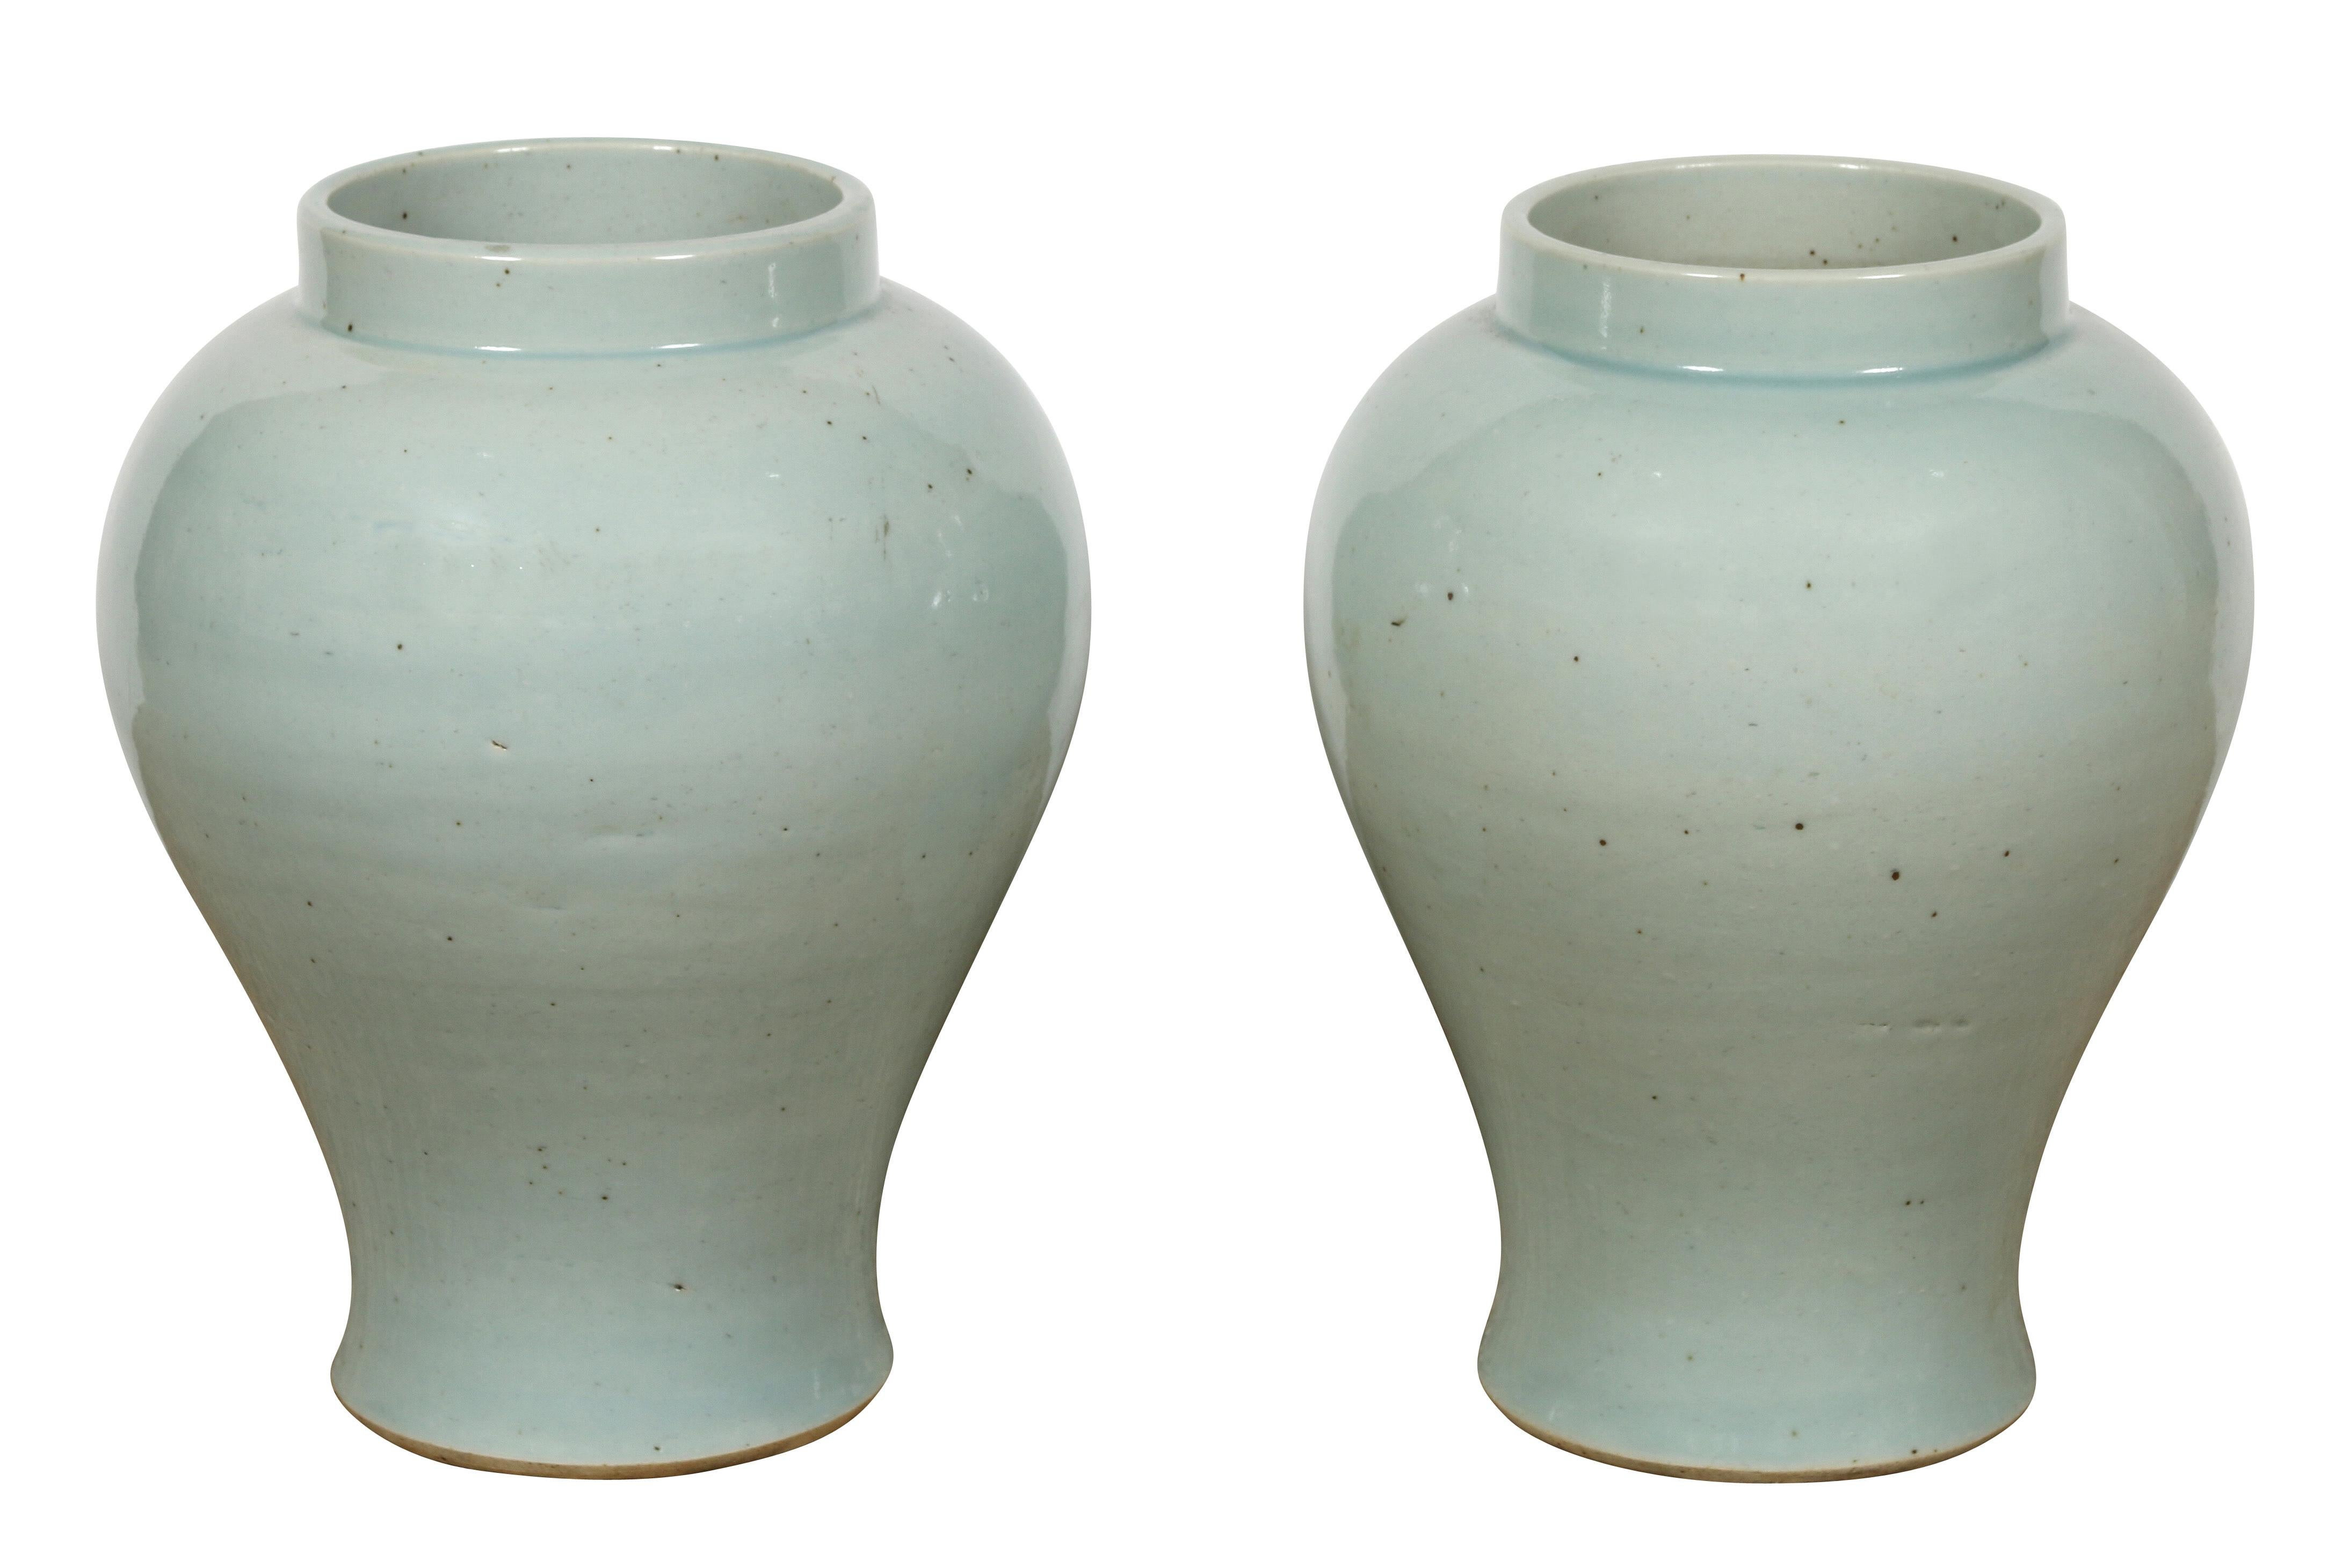 Eine chinesische Keramikvase in einem schönen, weichen Seladon. Sie eignen sich hervorragend als Gefäße für Blumen, sind aber auch als solche sehr hübsch. Der Preis liegt bei $195 pro Stück.